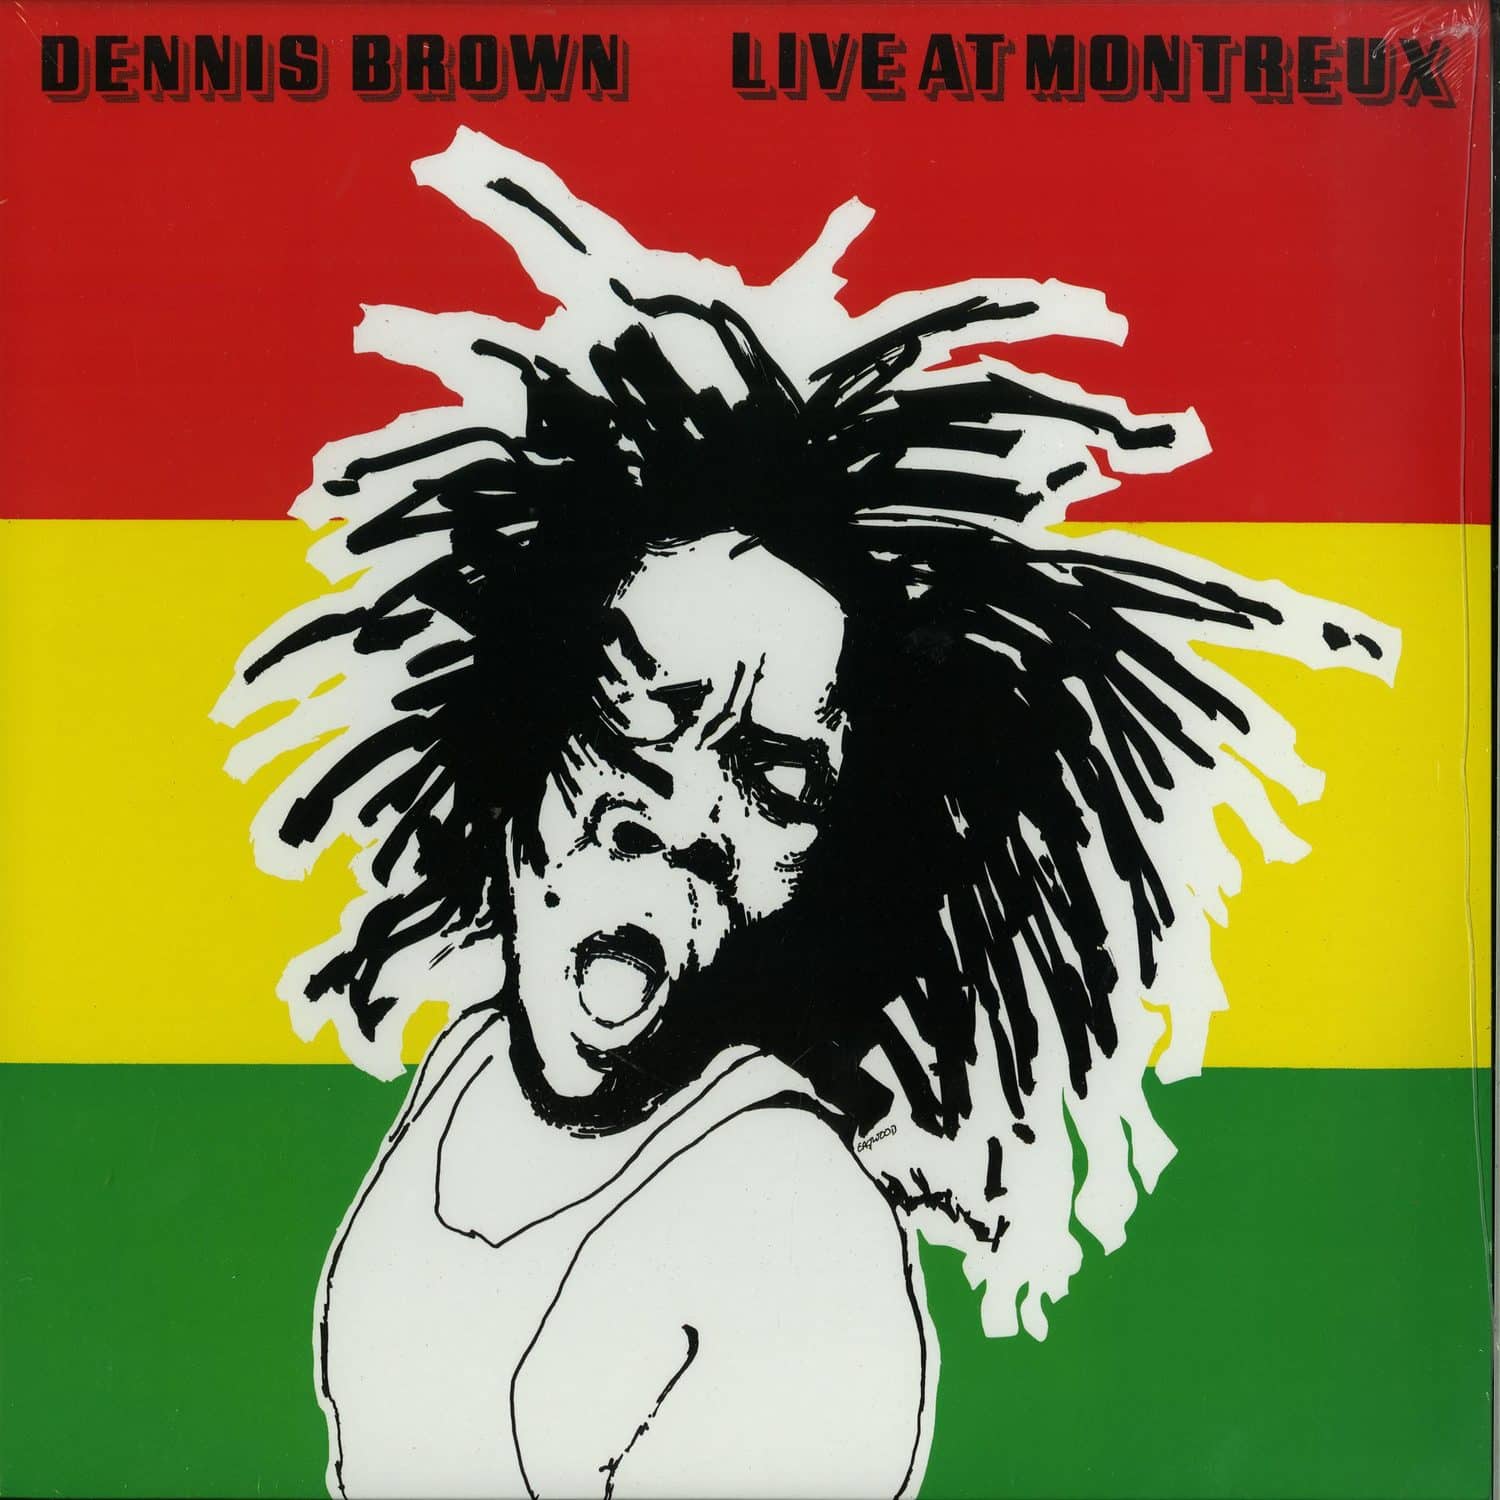 Dennis Brown - LIVE AT MONTREUX 